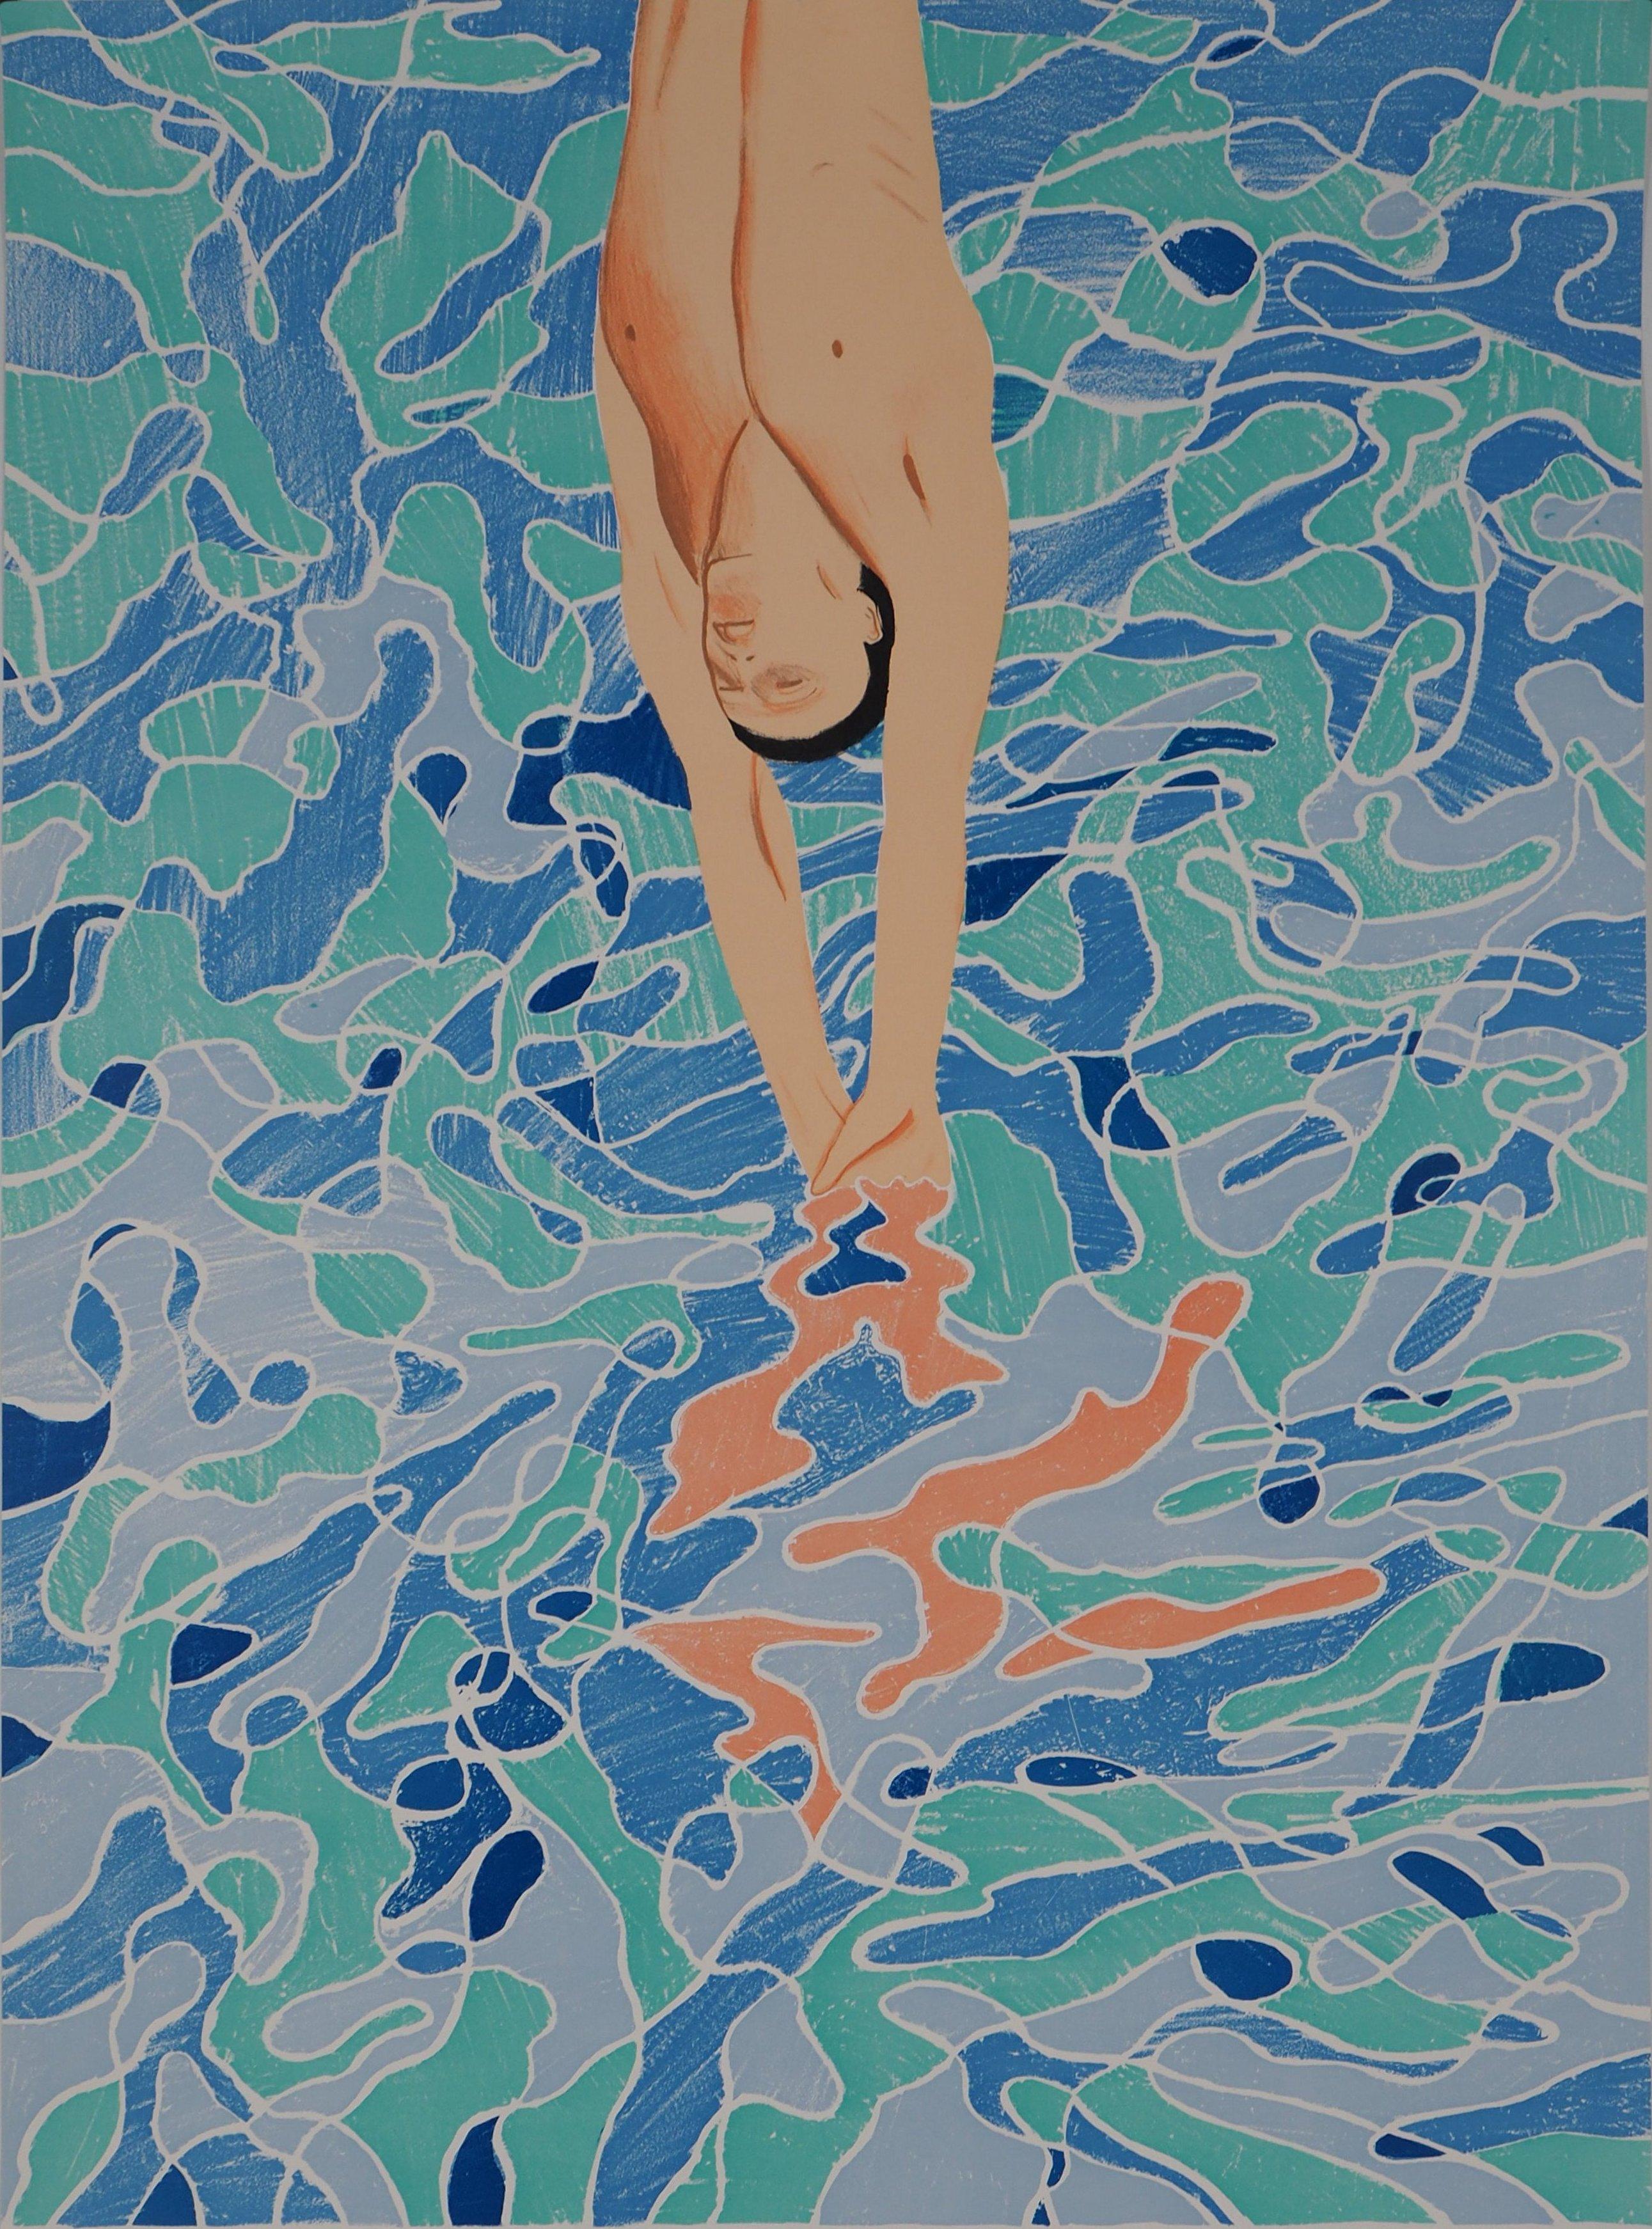 Diver à la piscine - Lithographie (Jeux olympiques de Munich 1972) - Modernisme américain Print par David Hockney